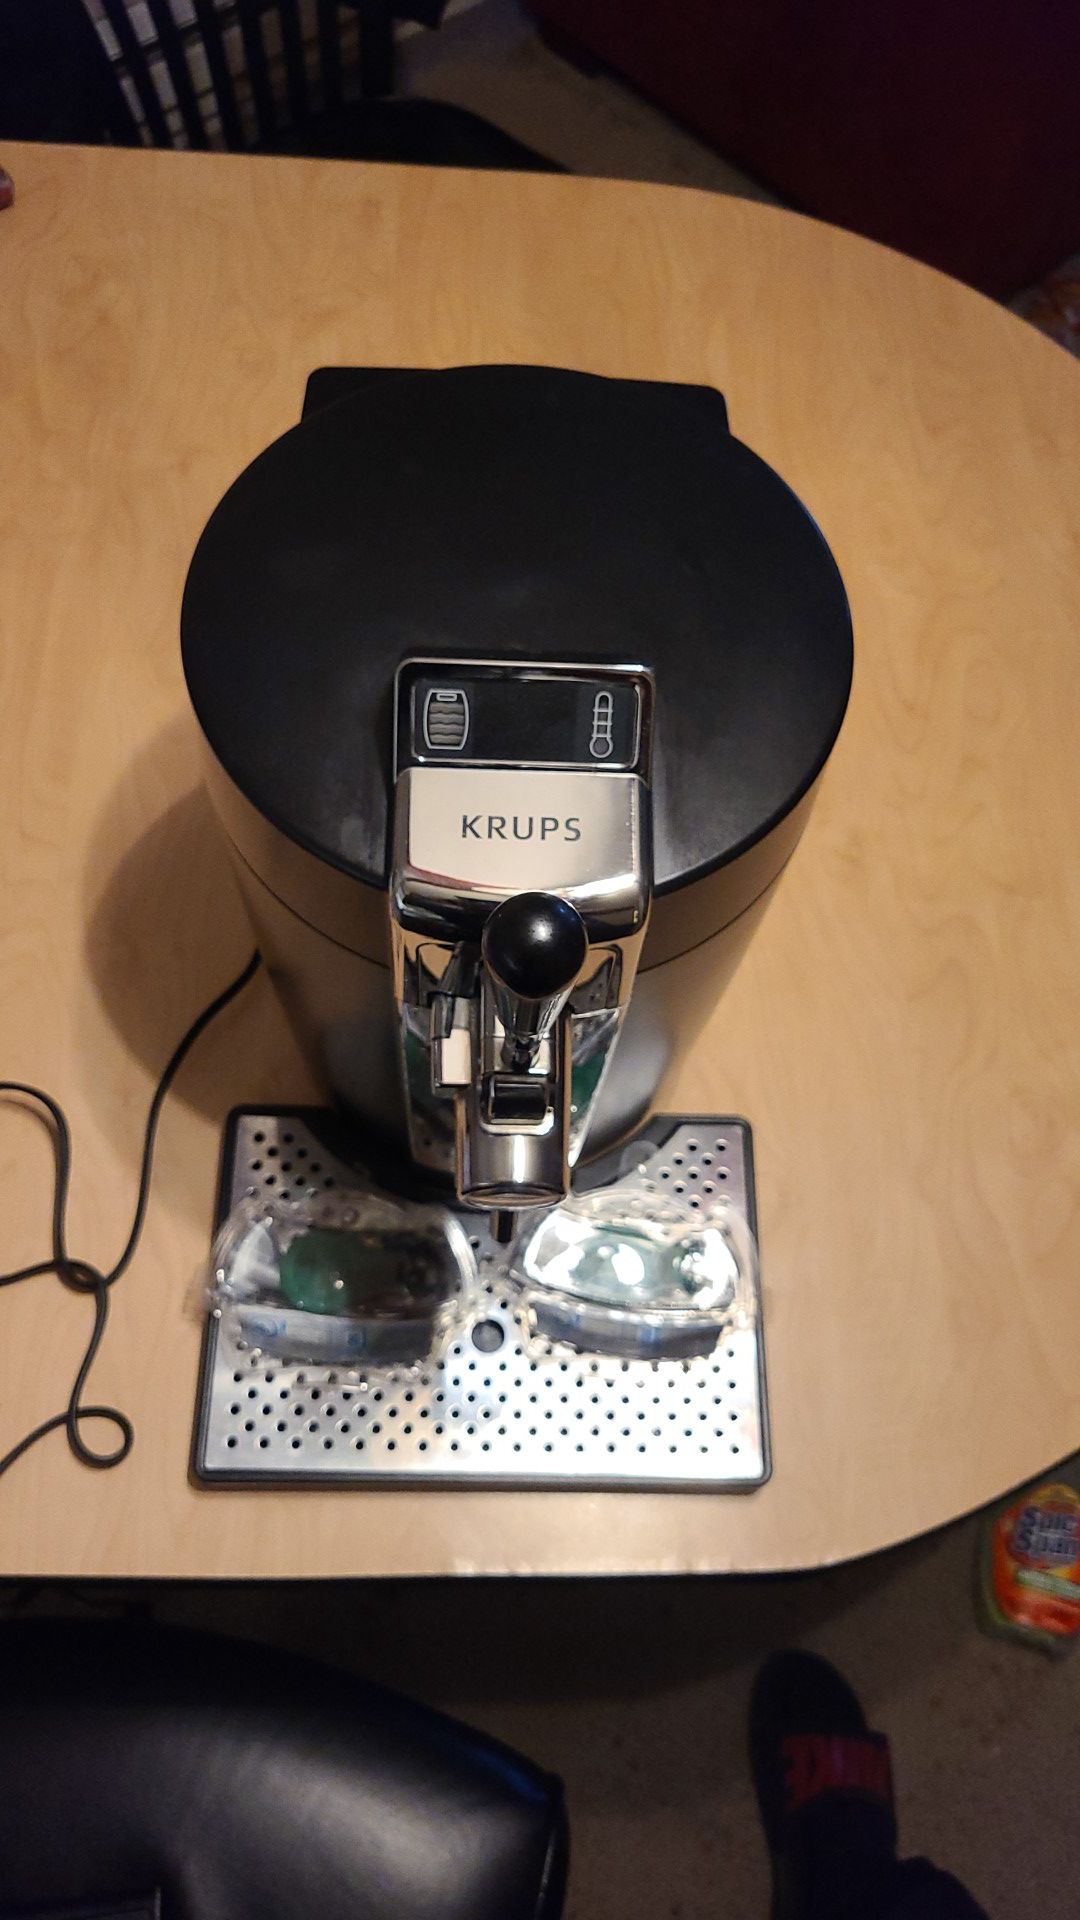 Krups beertender- Plus 2 Tubes included